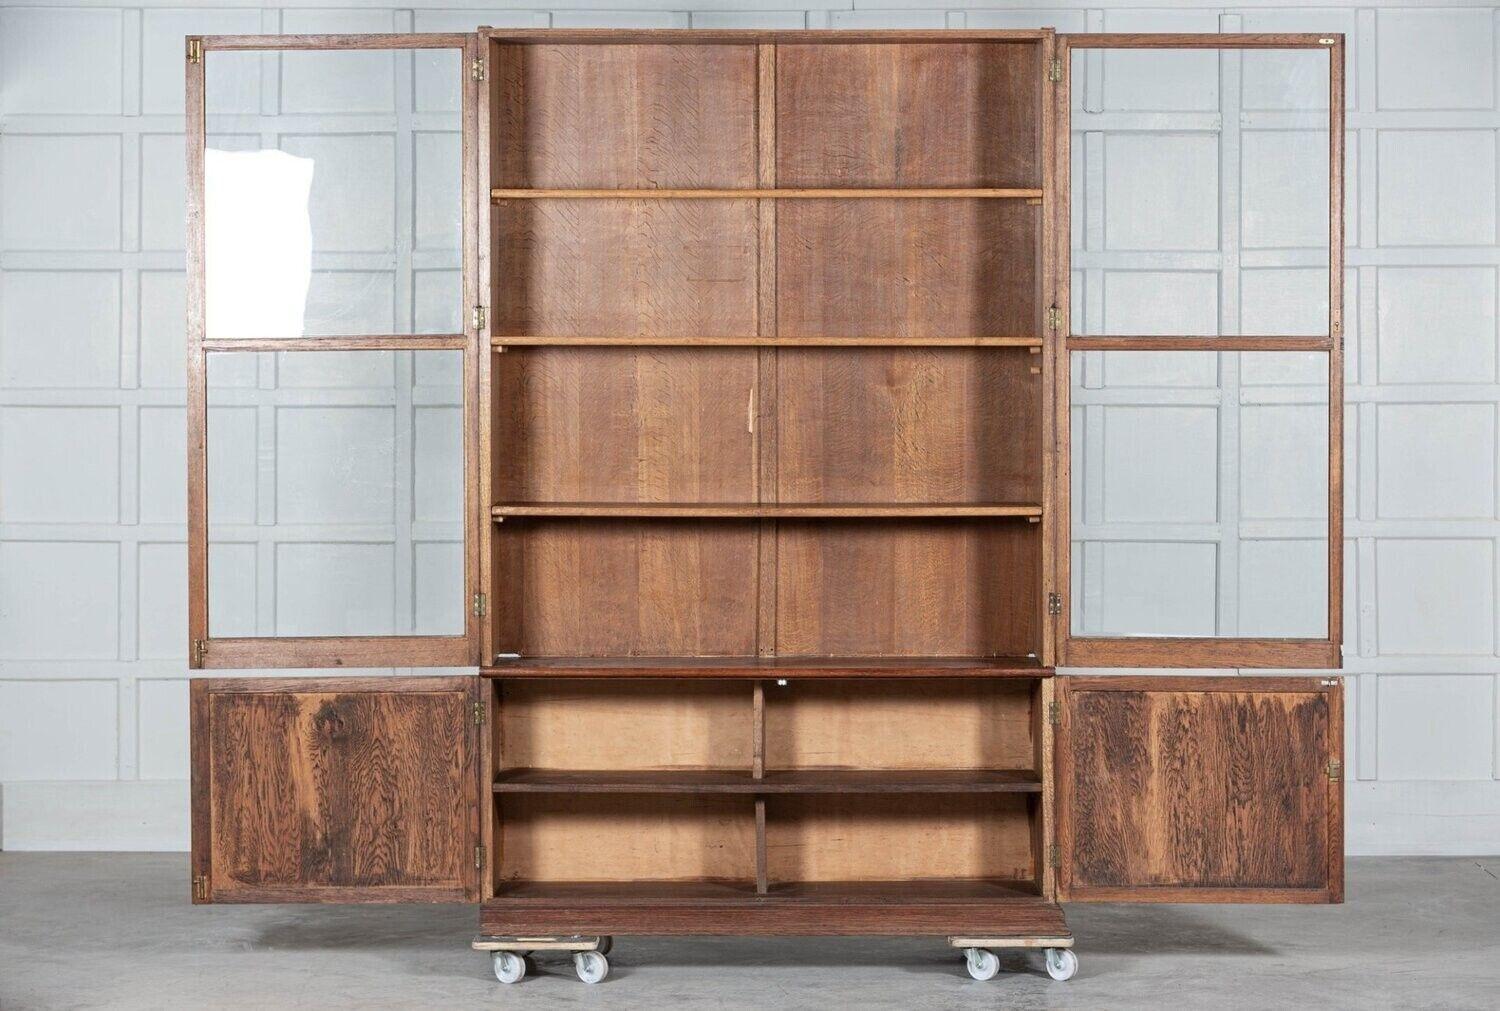 circa 1890
Large English oak glazed bookcase cabinet with adjustable top cabinet shelves.
Provenance: London Art School - Kennington.
Measures: W 149 x D 37 x H 220cm.
Base W 140 x D 37 x H 65cm.
Top W 138 x D 34 x H 155.
 